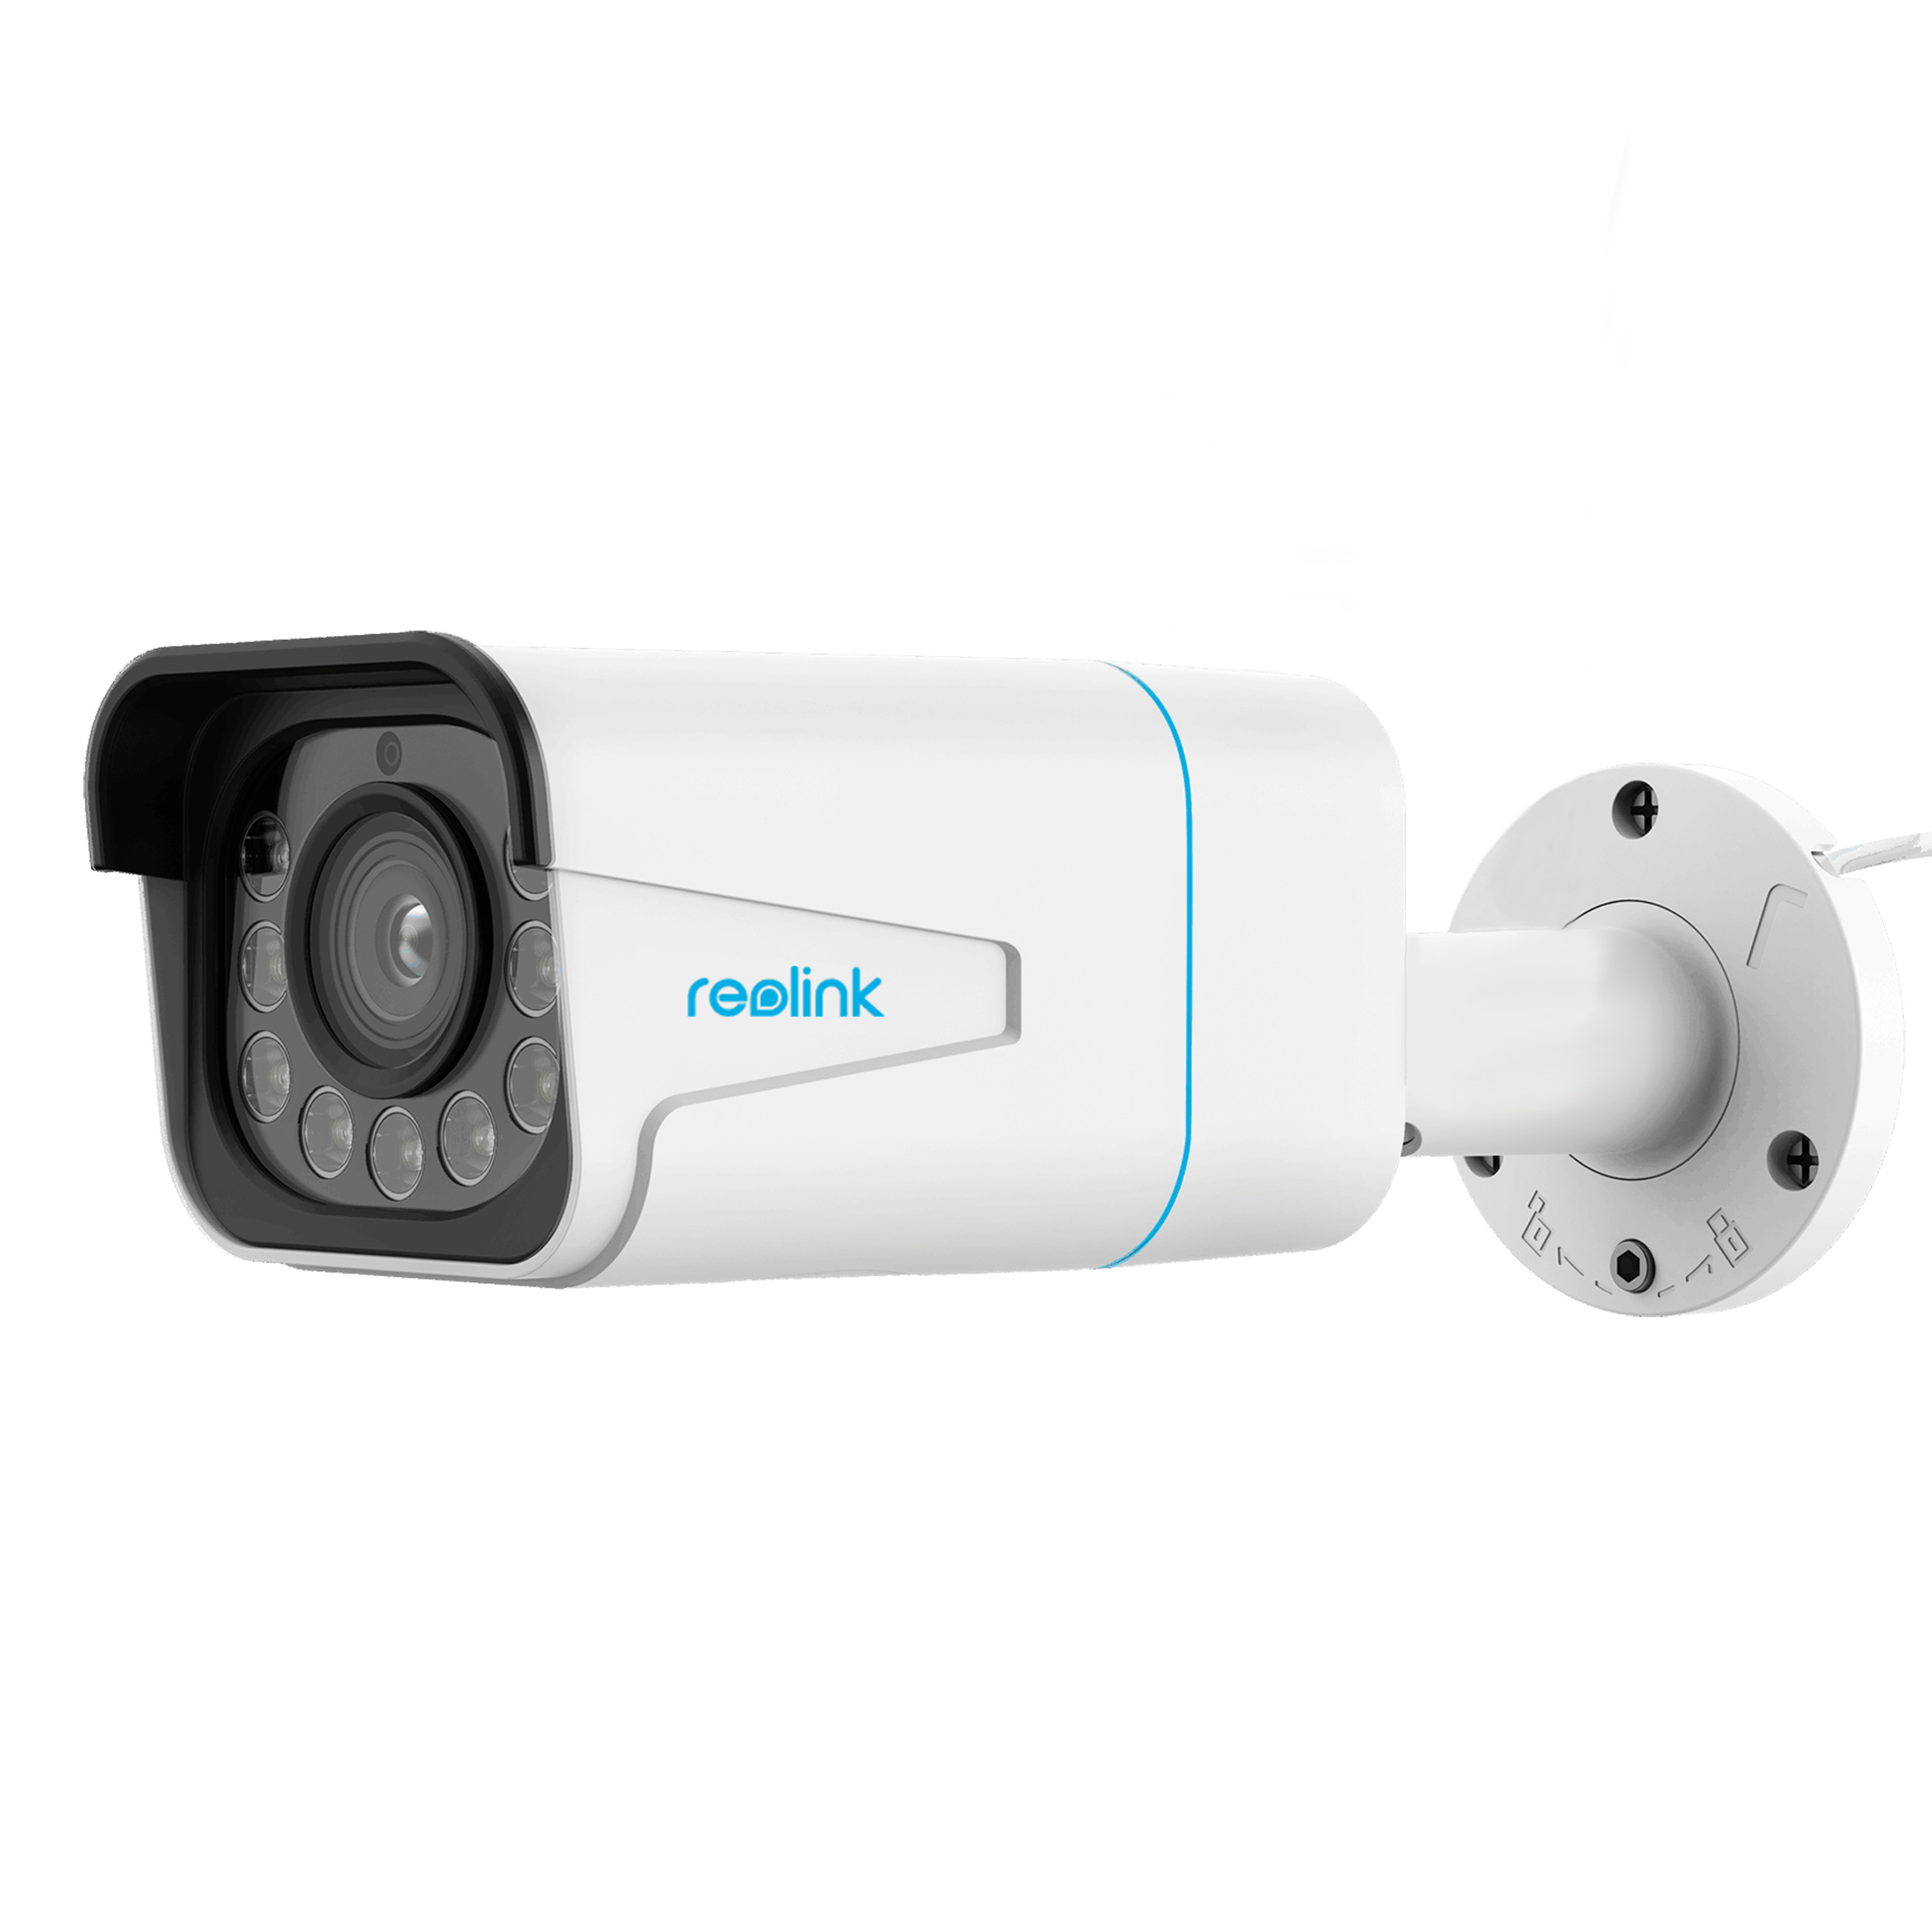 Überwachungskamera, x Video: pixels RLC-811A, Auflösung REOLINK 3840 2160